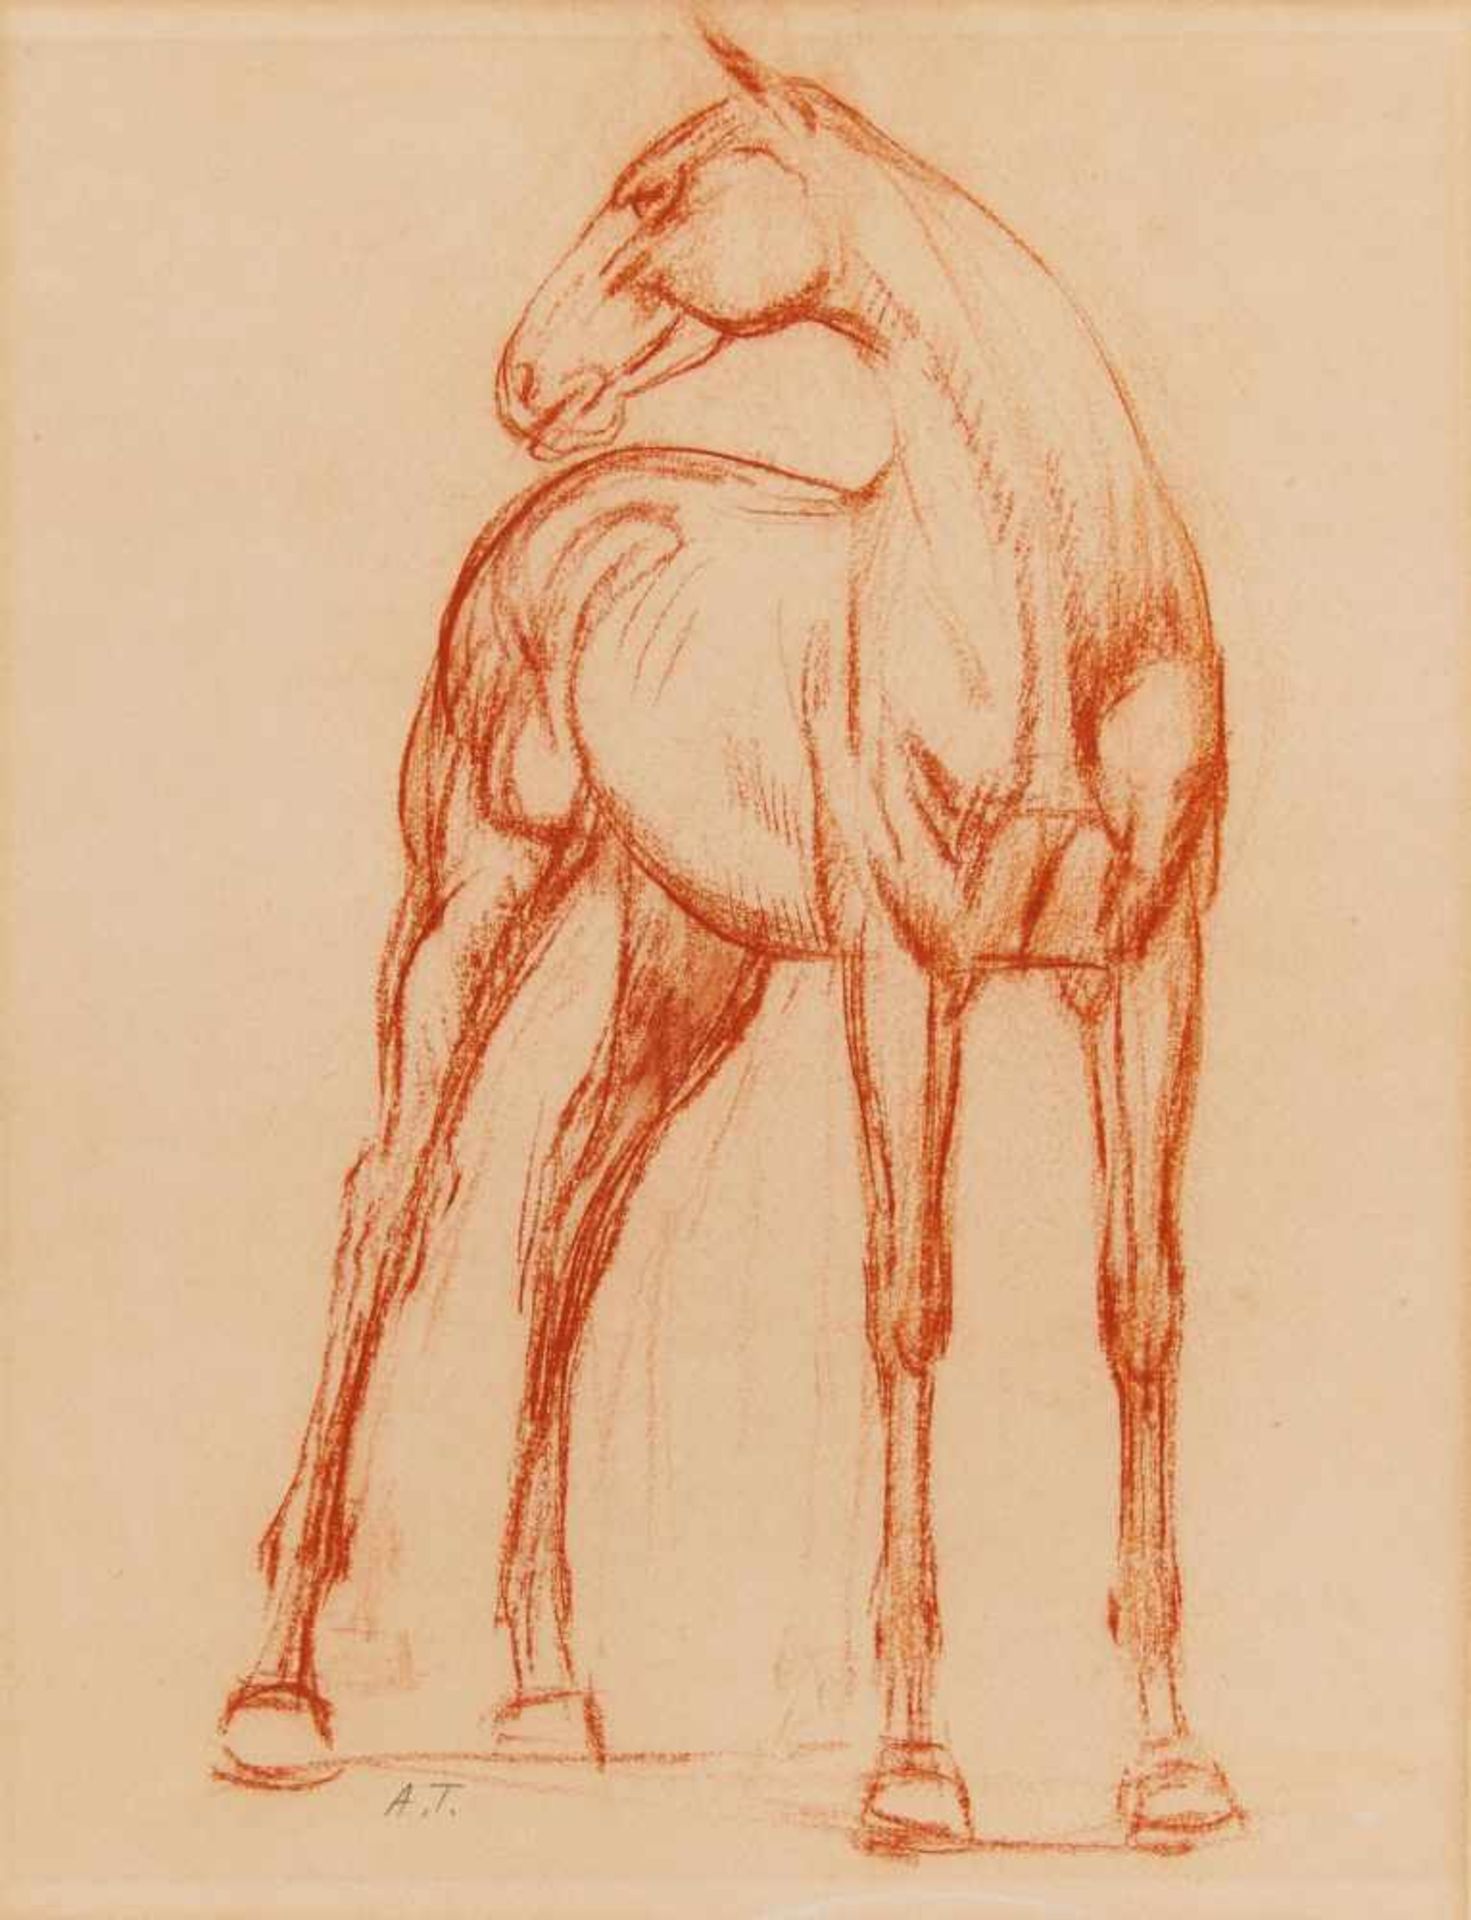 Trémont, AugusteLuxemburg 1892 - 1980Pferd. Rötel auf Velin. 37,5 x 30cm. Monogrammiert unterhalb